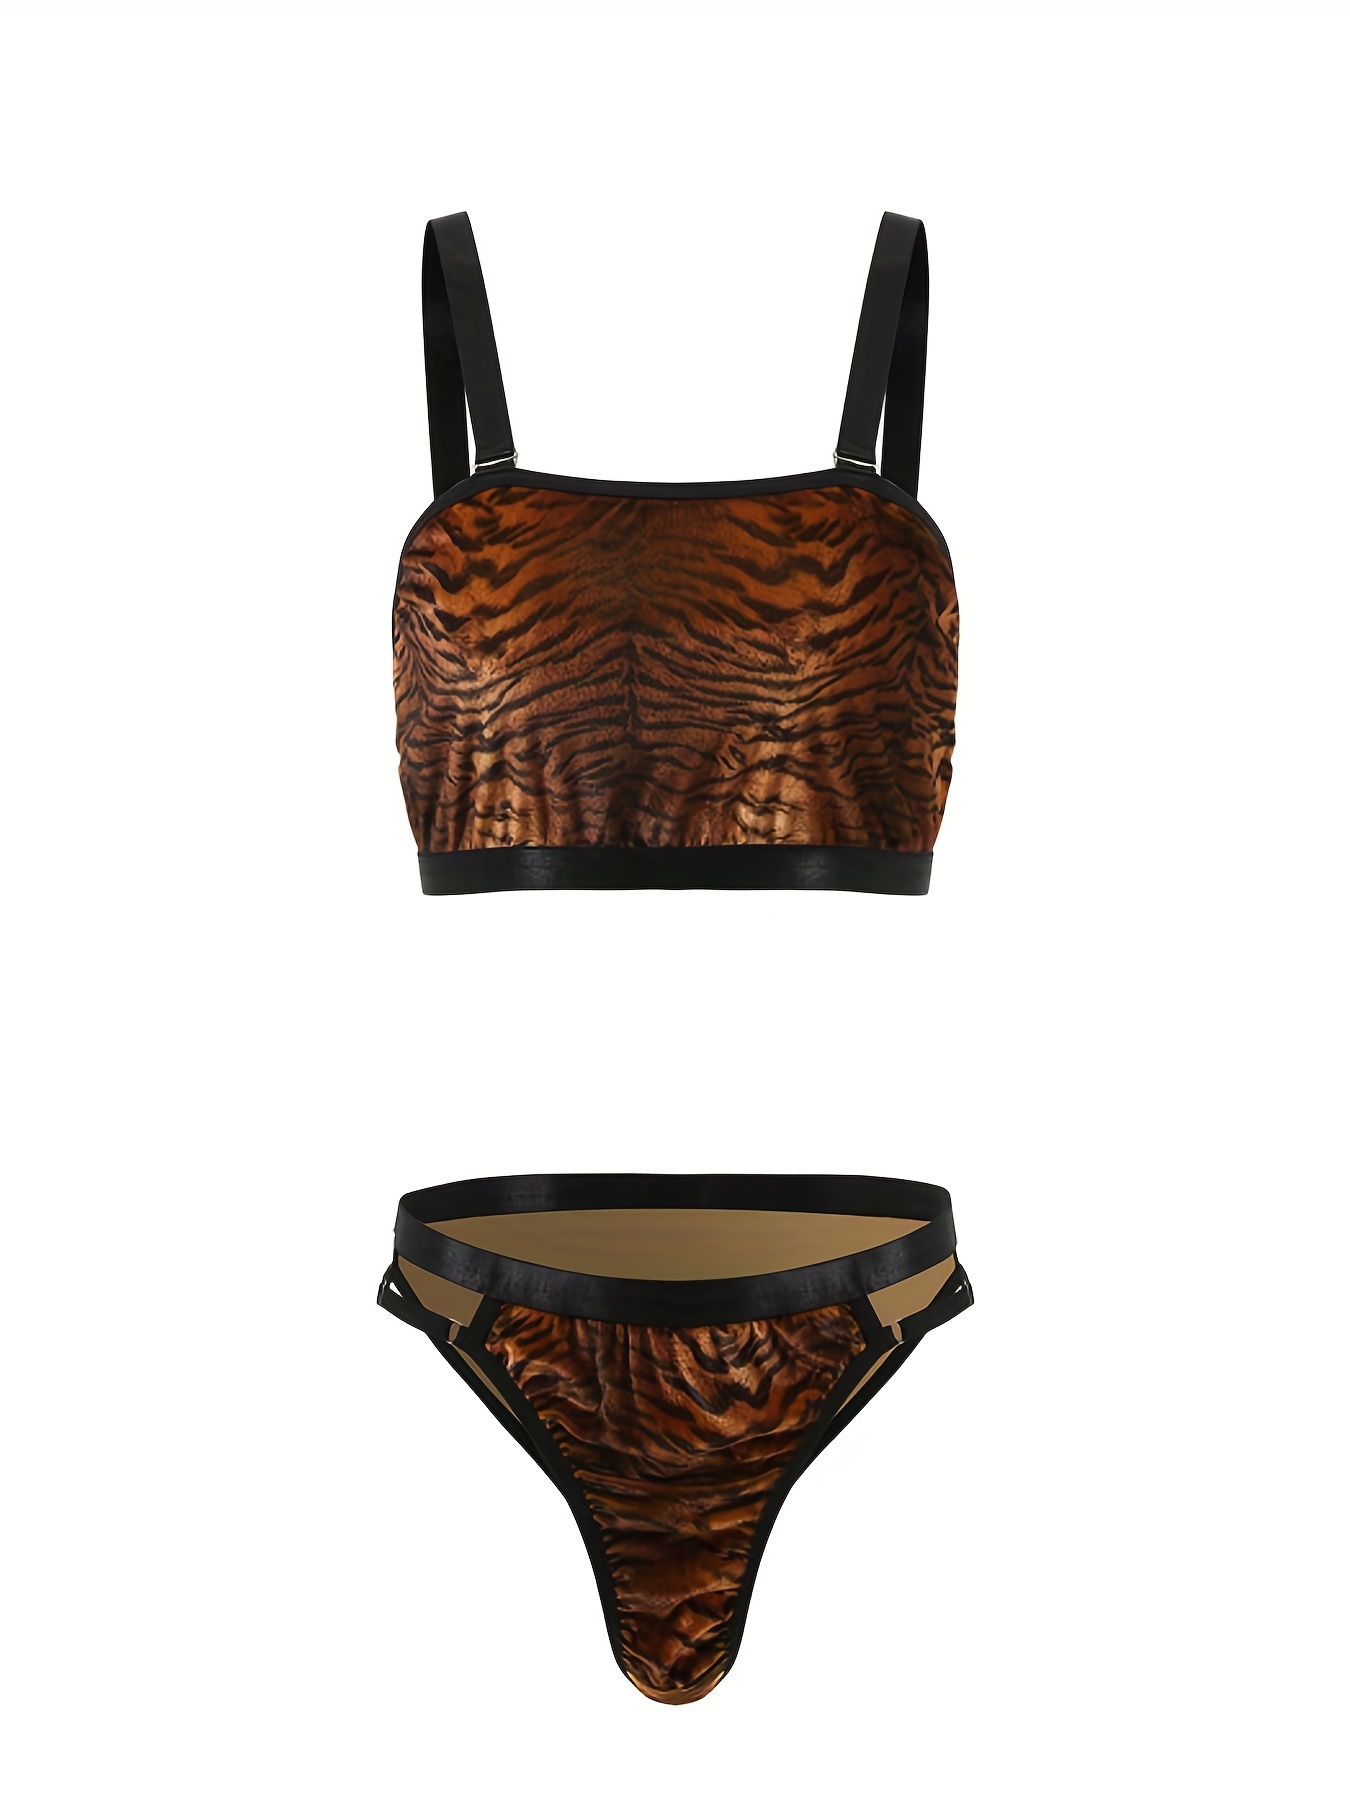 Plus Size Leopard Print Bra & Panties Lingerie Set, Women's Plus